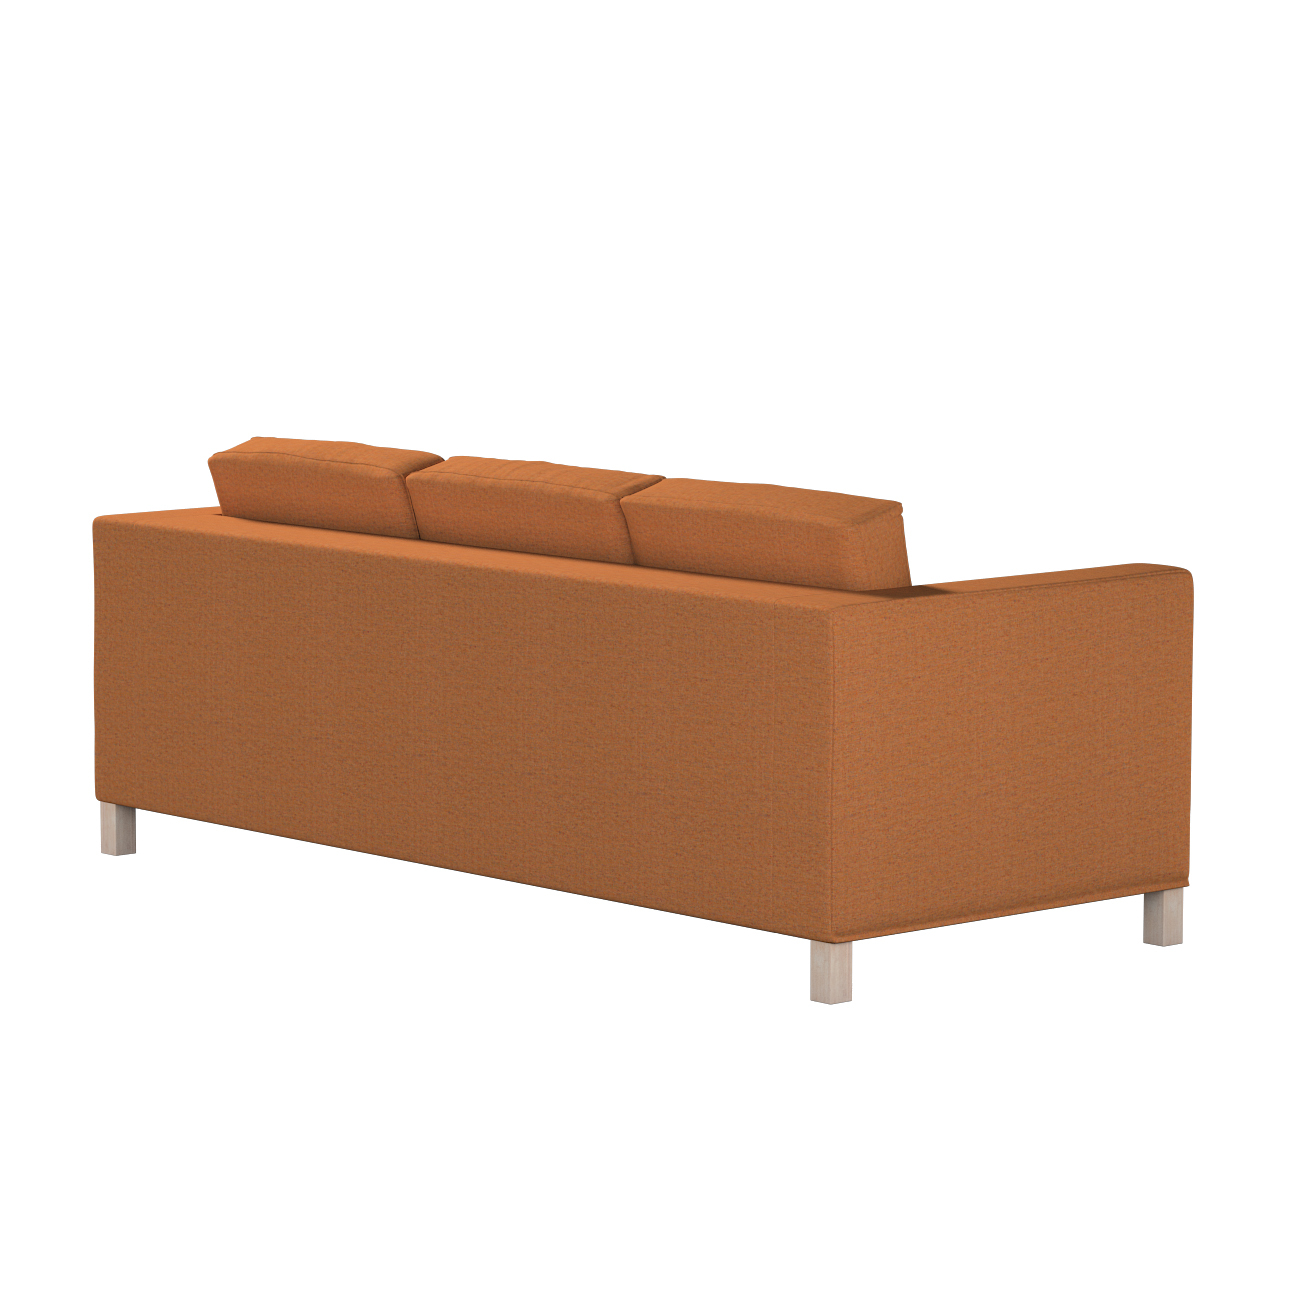 Bezug für Karlanda 3-Sitzer Sofa nicht ausklappbar, kurz, orange, Bezug für günstig online kaufen